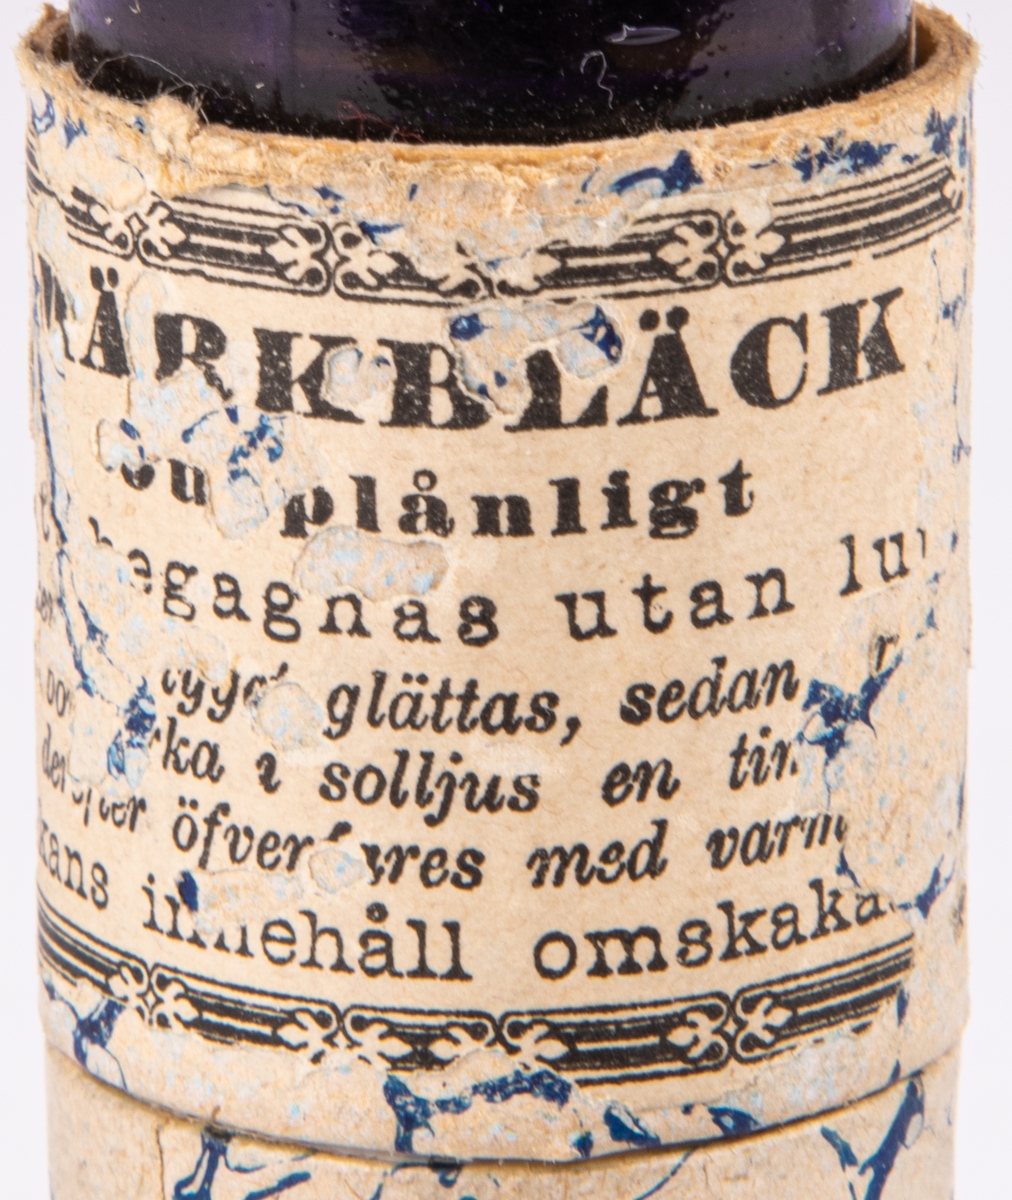 Flaska innehållande märkbläck, skrivbläck, violett. Etikett härstammande från Apoteket Lejonet, Gävle.